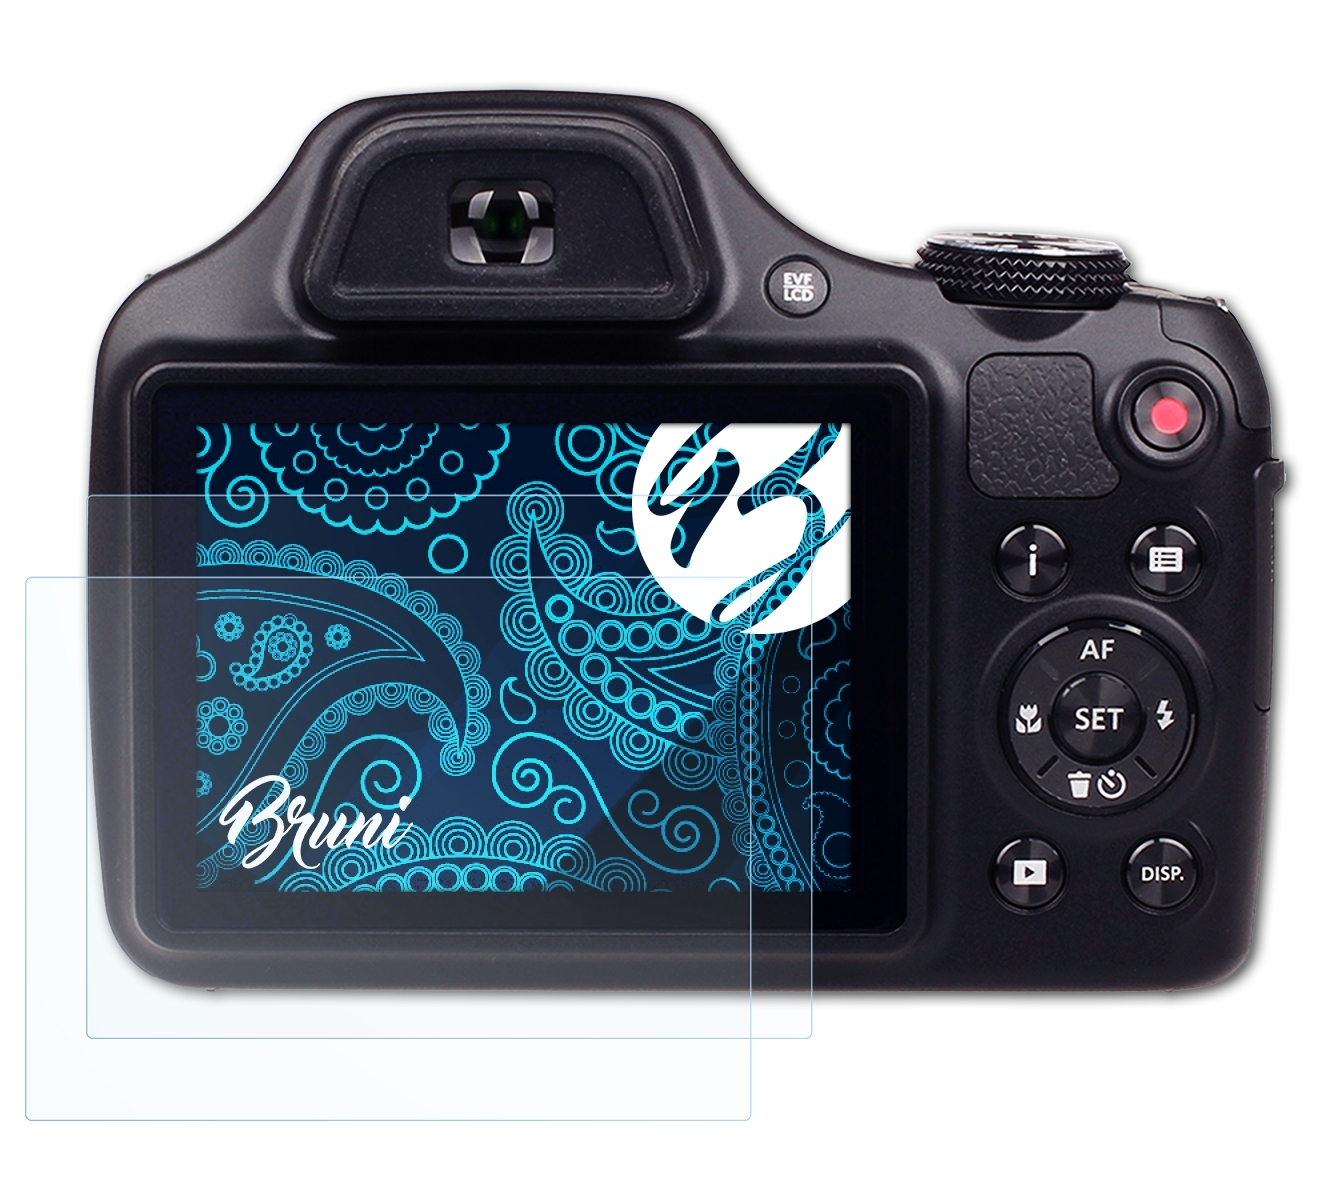 Basics-Clear AZ522) PixPro BRUNI Schutzfolie(für 2x Kodak